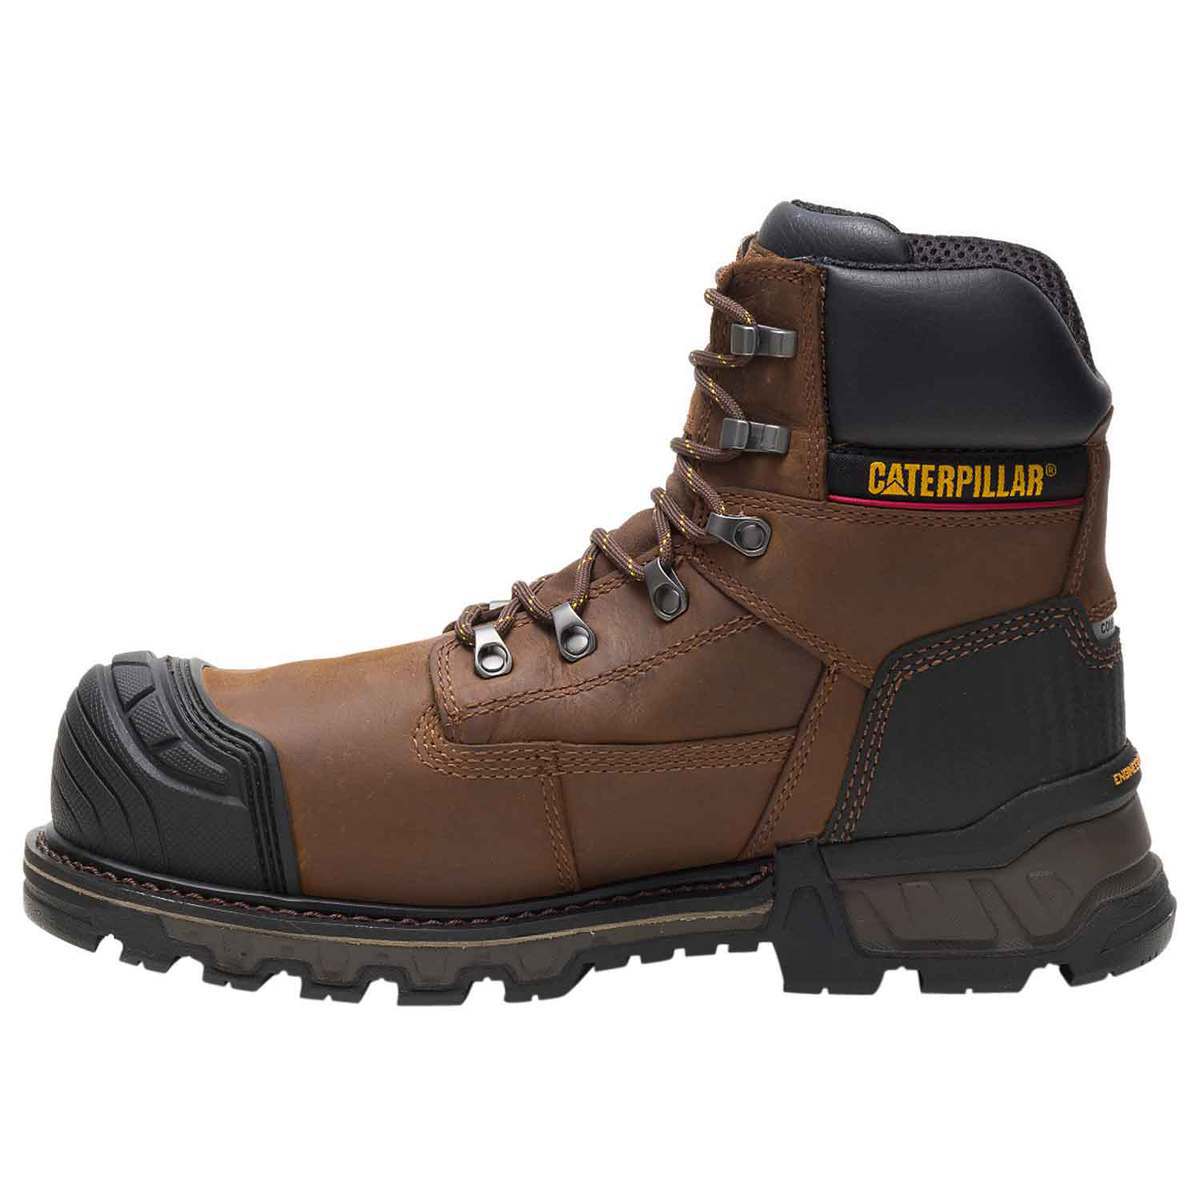 Caterpillar Men's Excavator XL 6 Inch Composite Toe Work Boots - Brown ...